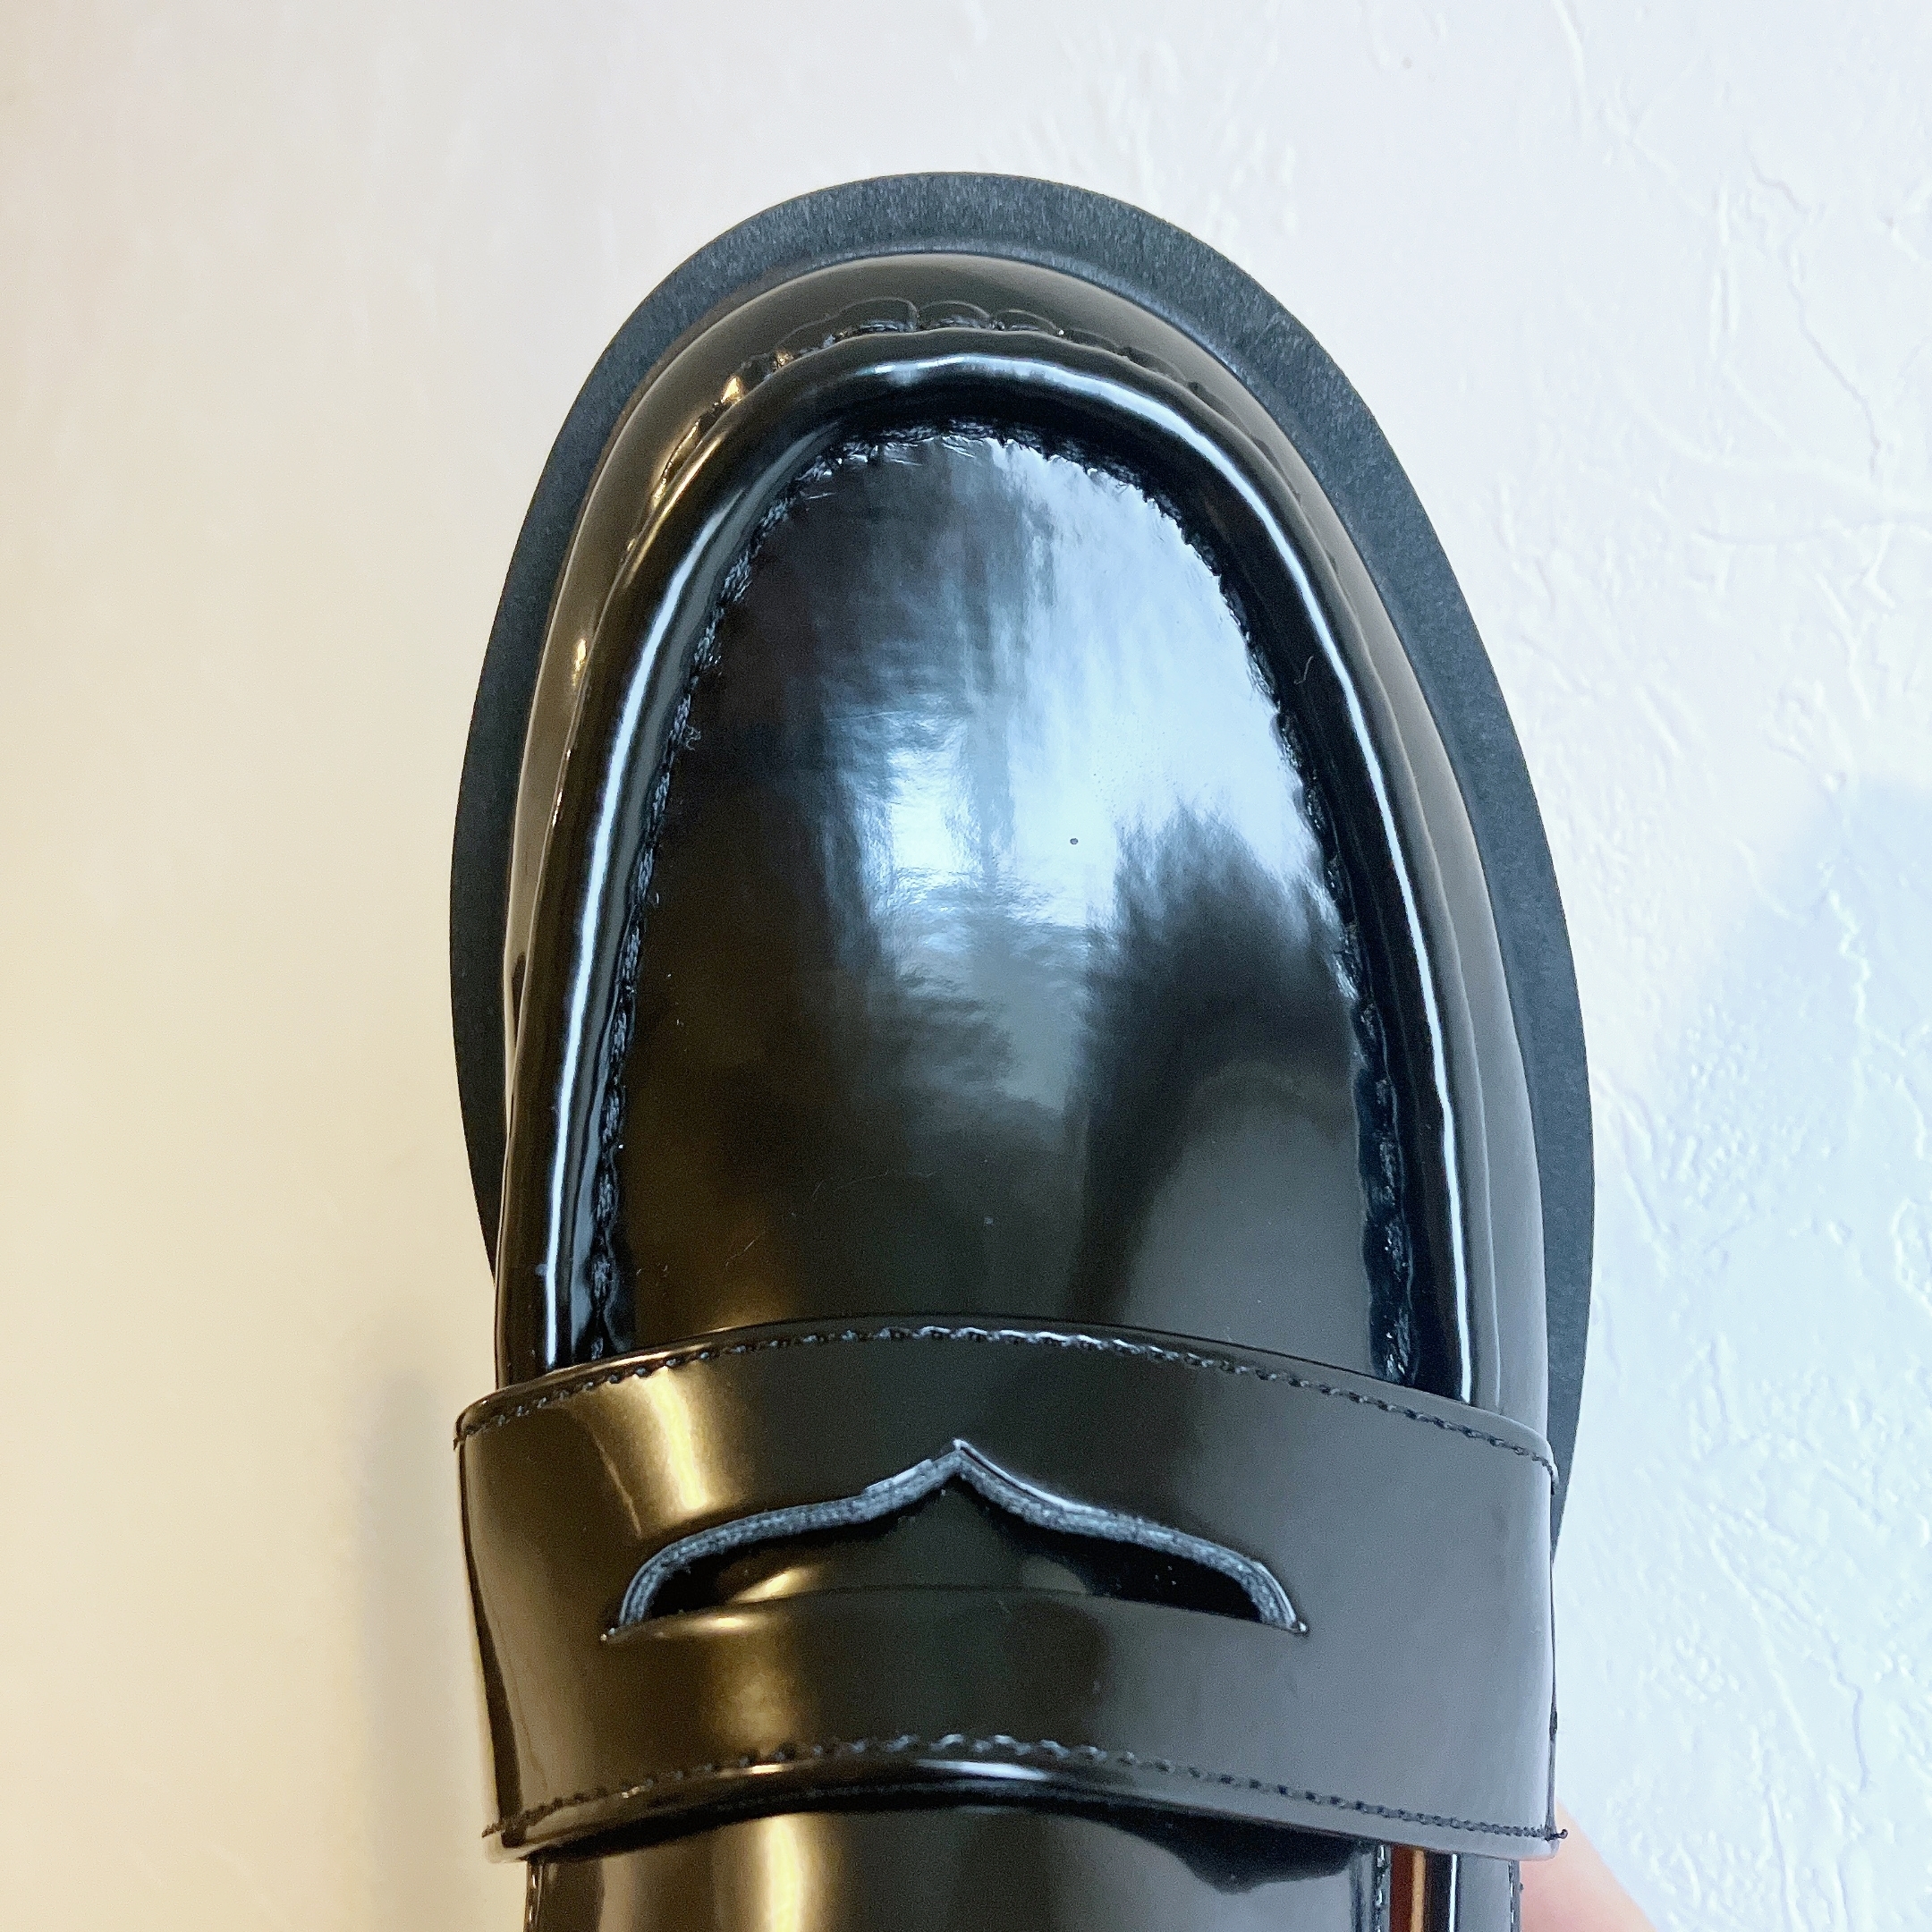 UNIQLO（ユニクロ）のおすすめ靴「コンフィールタッチローファー」